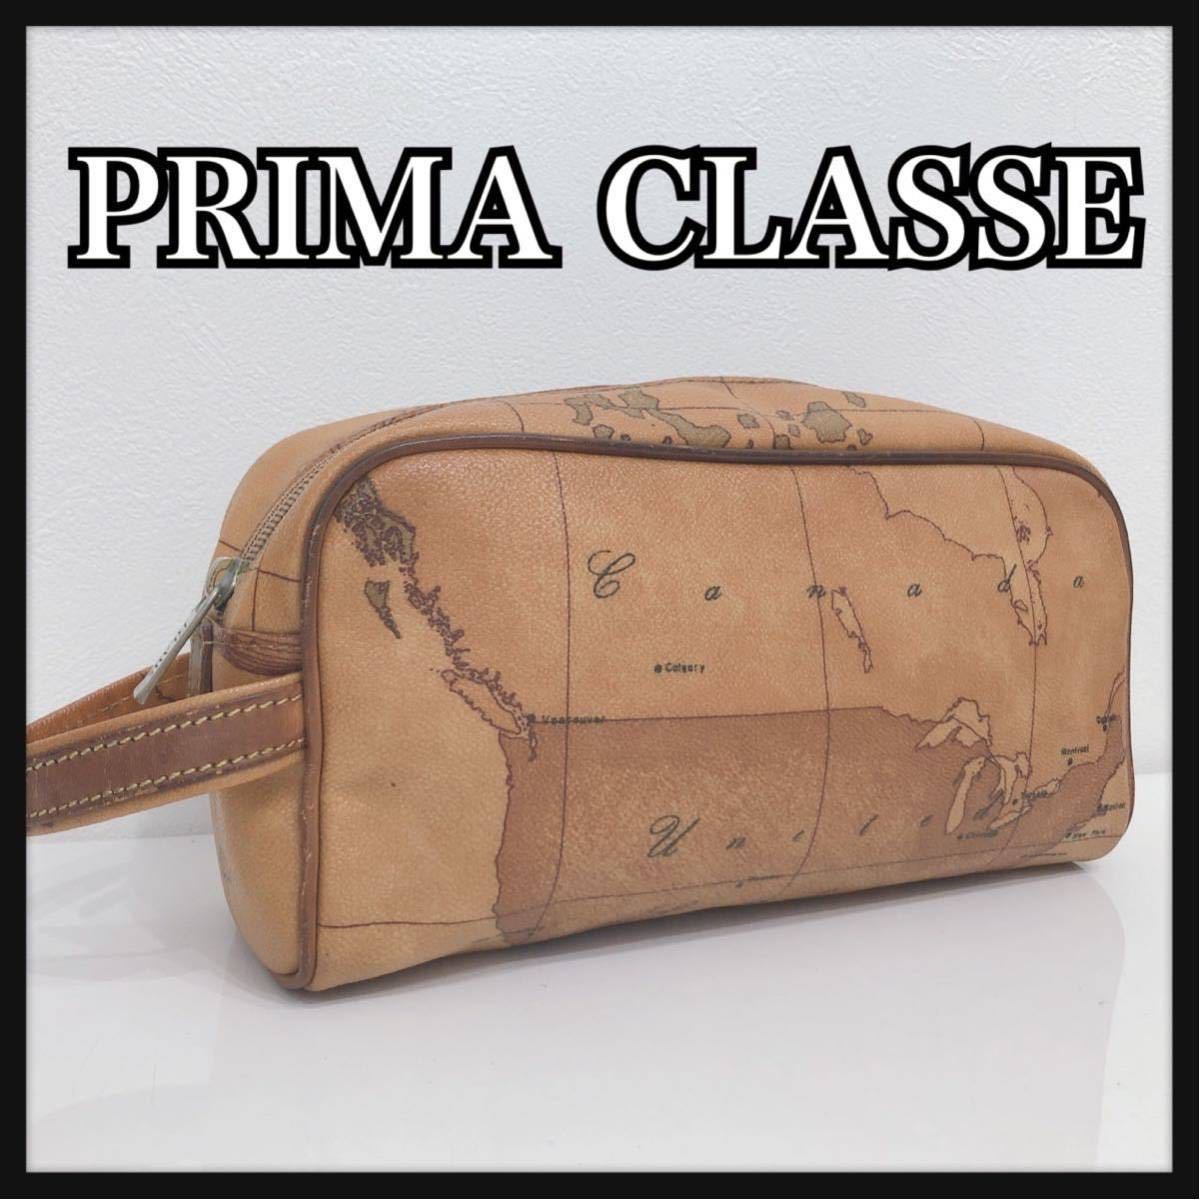 PRIMA CLASSE プリマクラッセ セカンドバッグ クラッチバッグ 世界地図